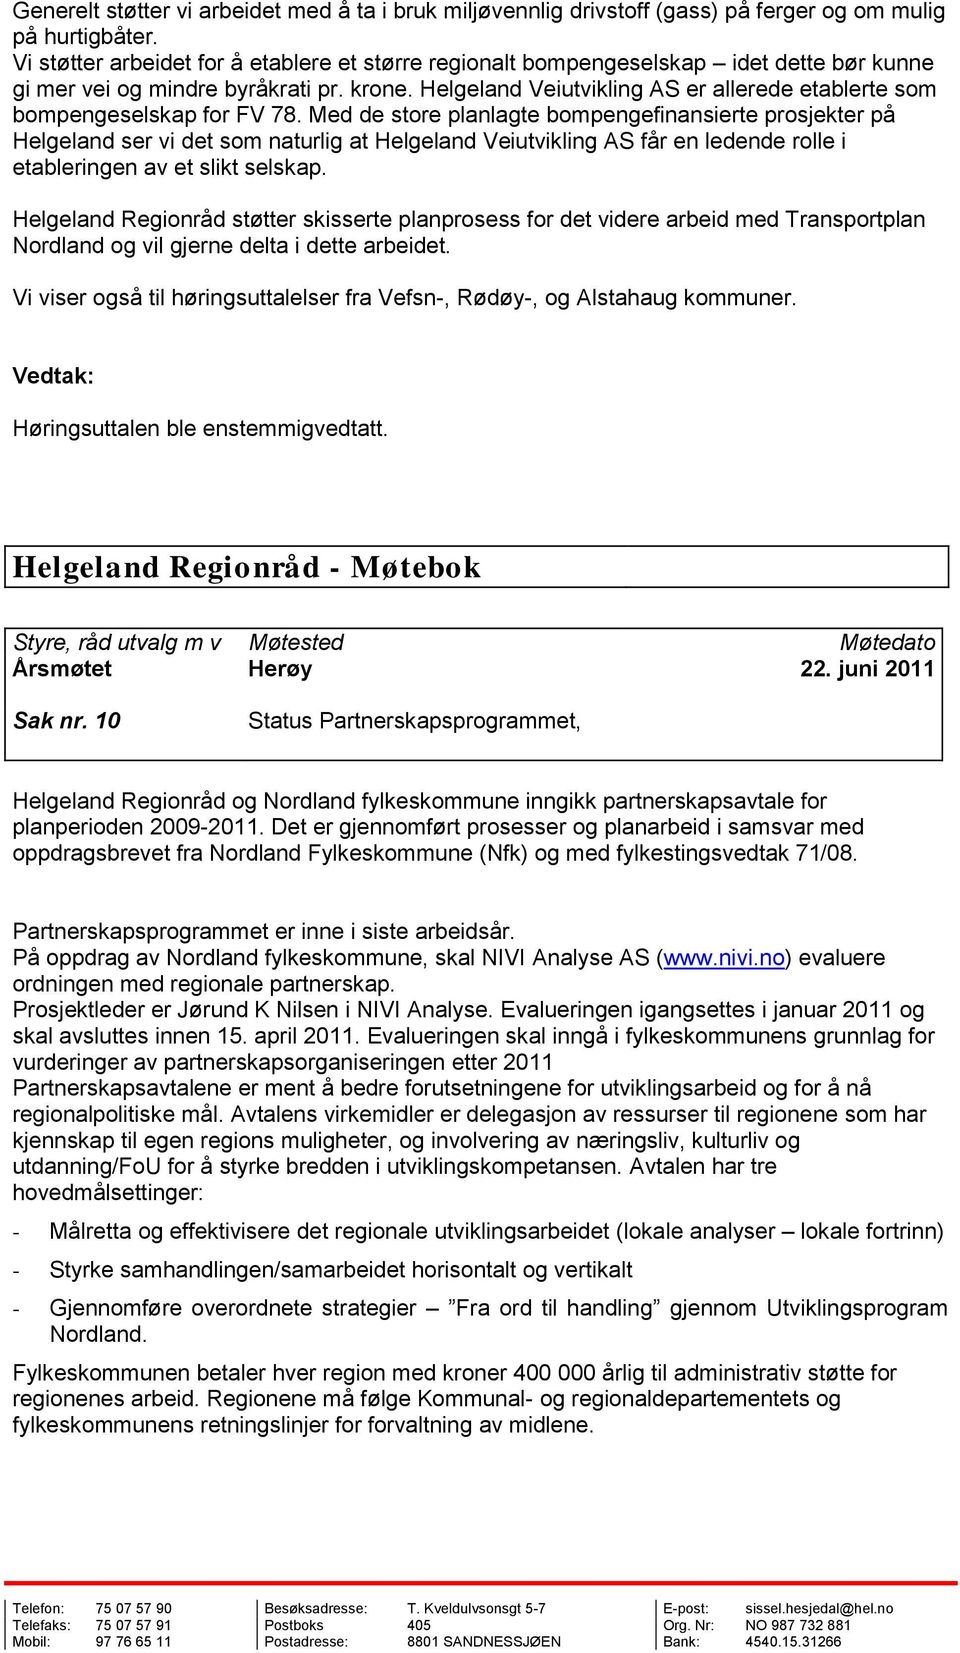 Helgeland Veiutvikling AS er allerede etablerte som bompengeselskap for FV 78.